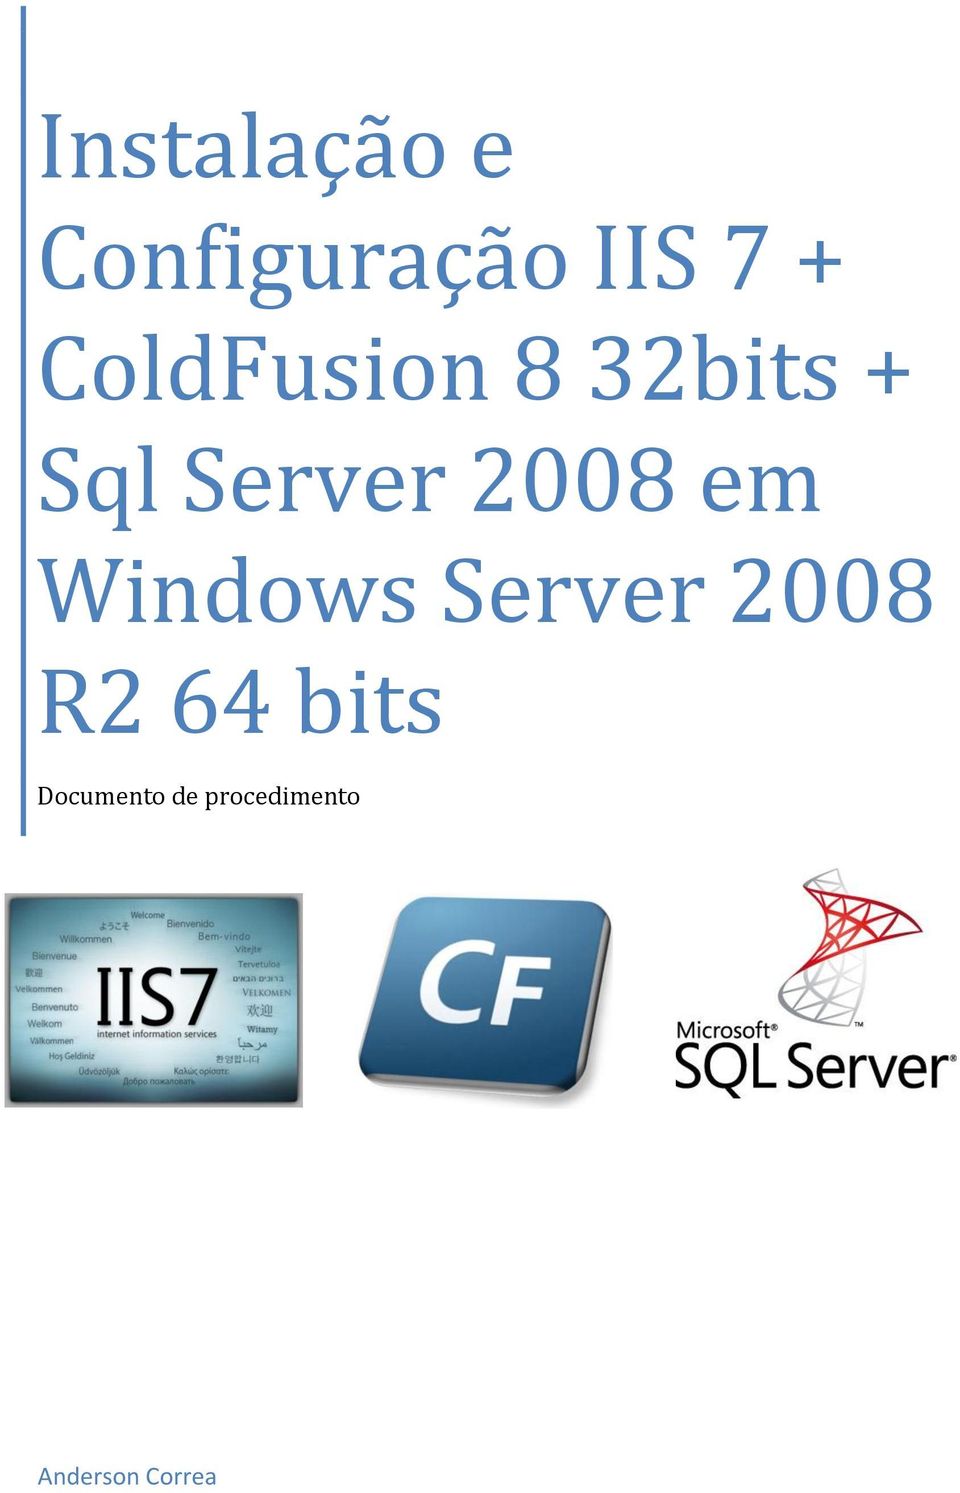 Server 2008 em Windows Server